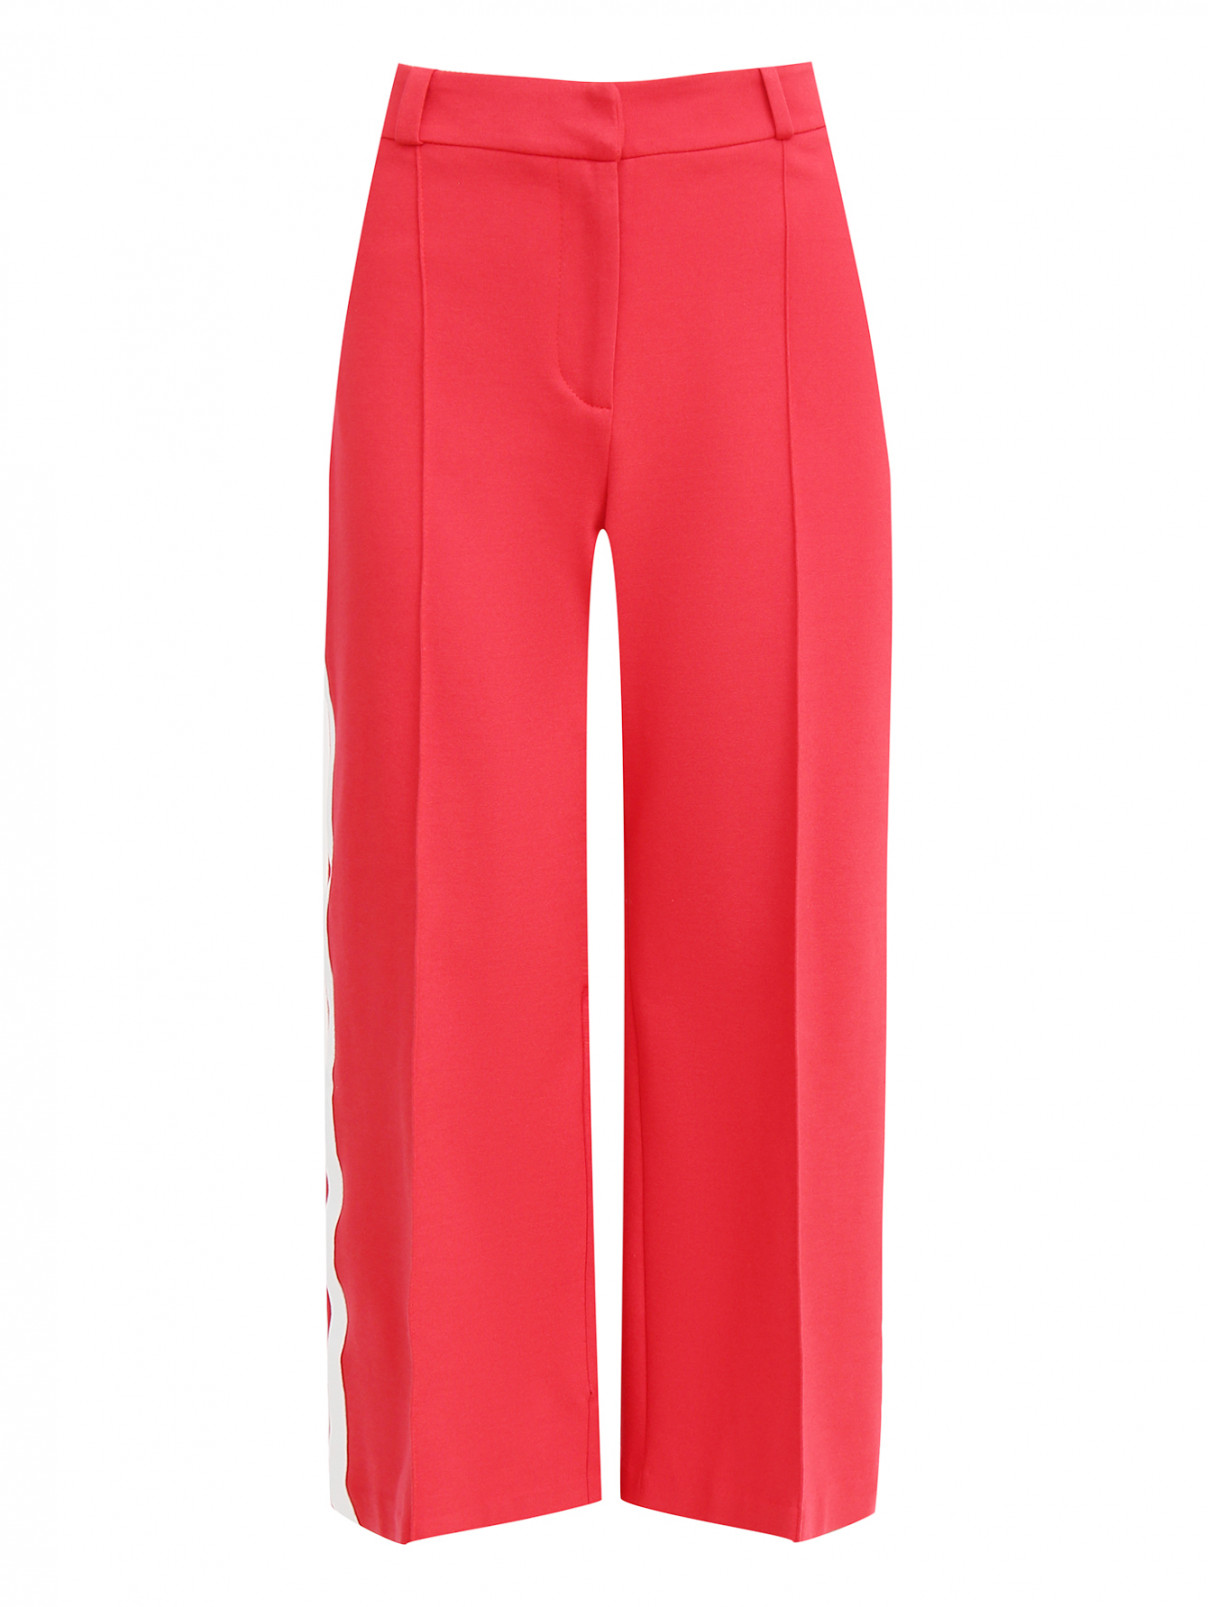 Укороченные брюки с контрастными лампасами IVI collection  –  Общий вид  – Цвет:  Красный